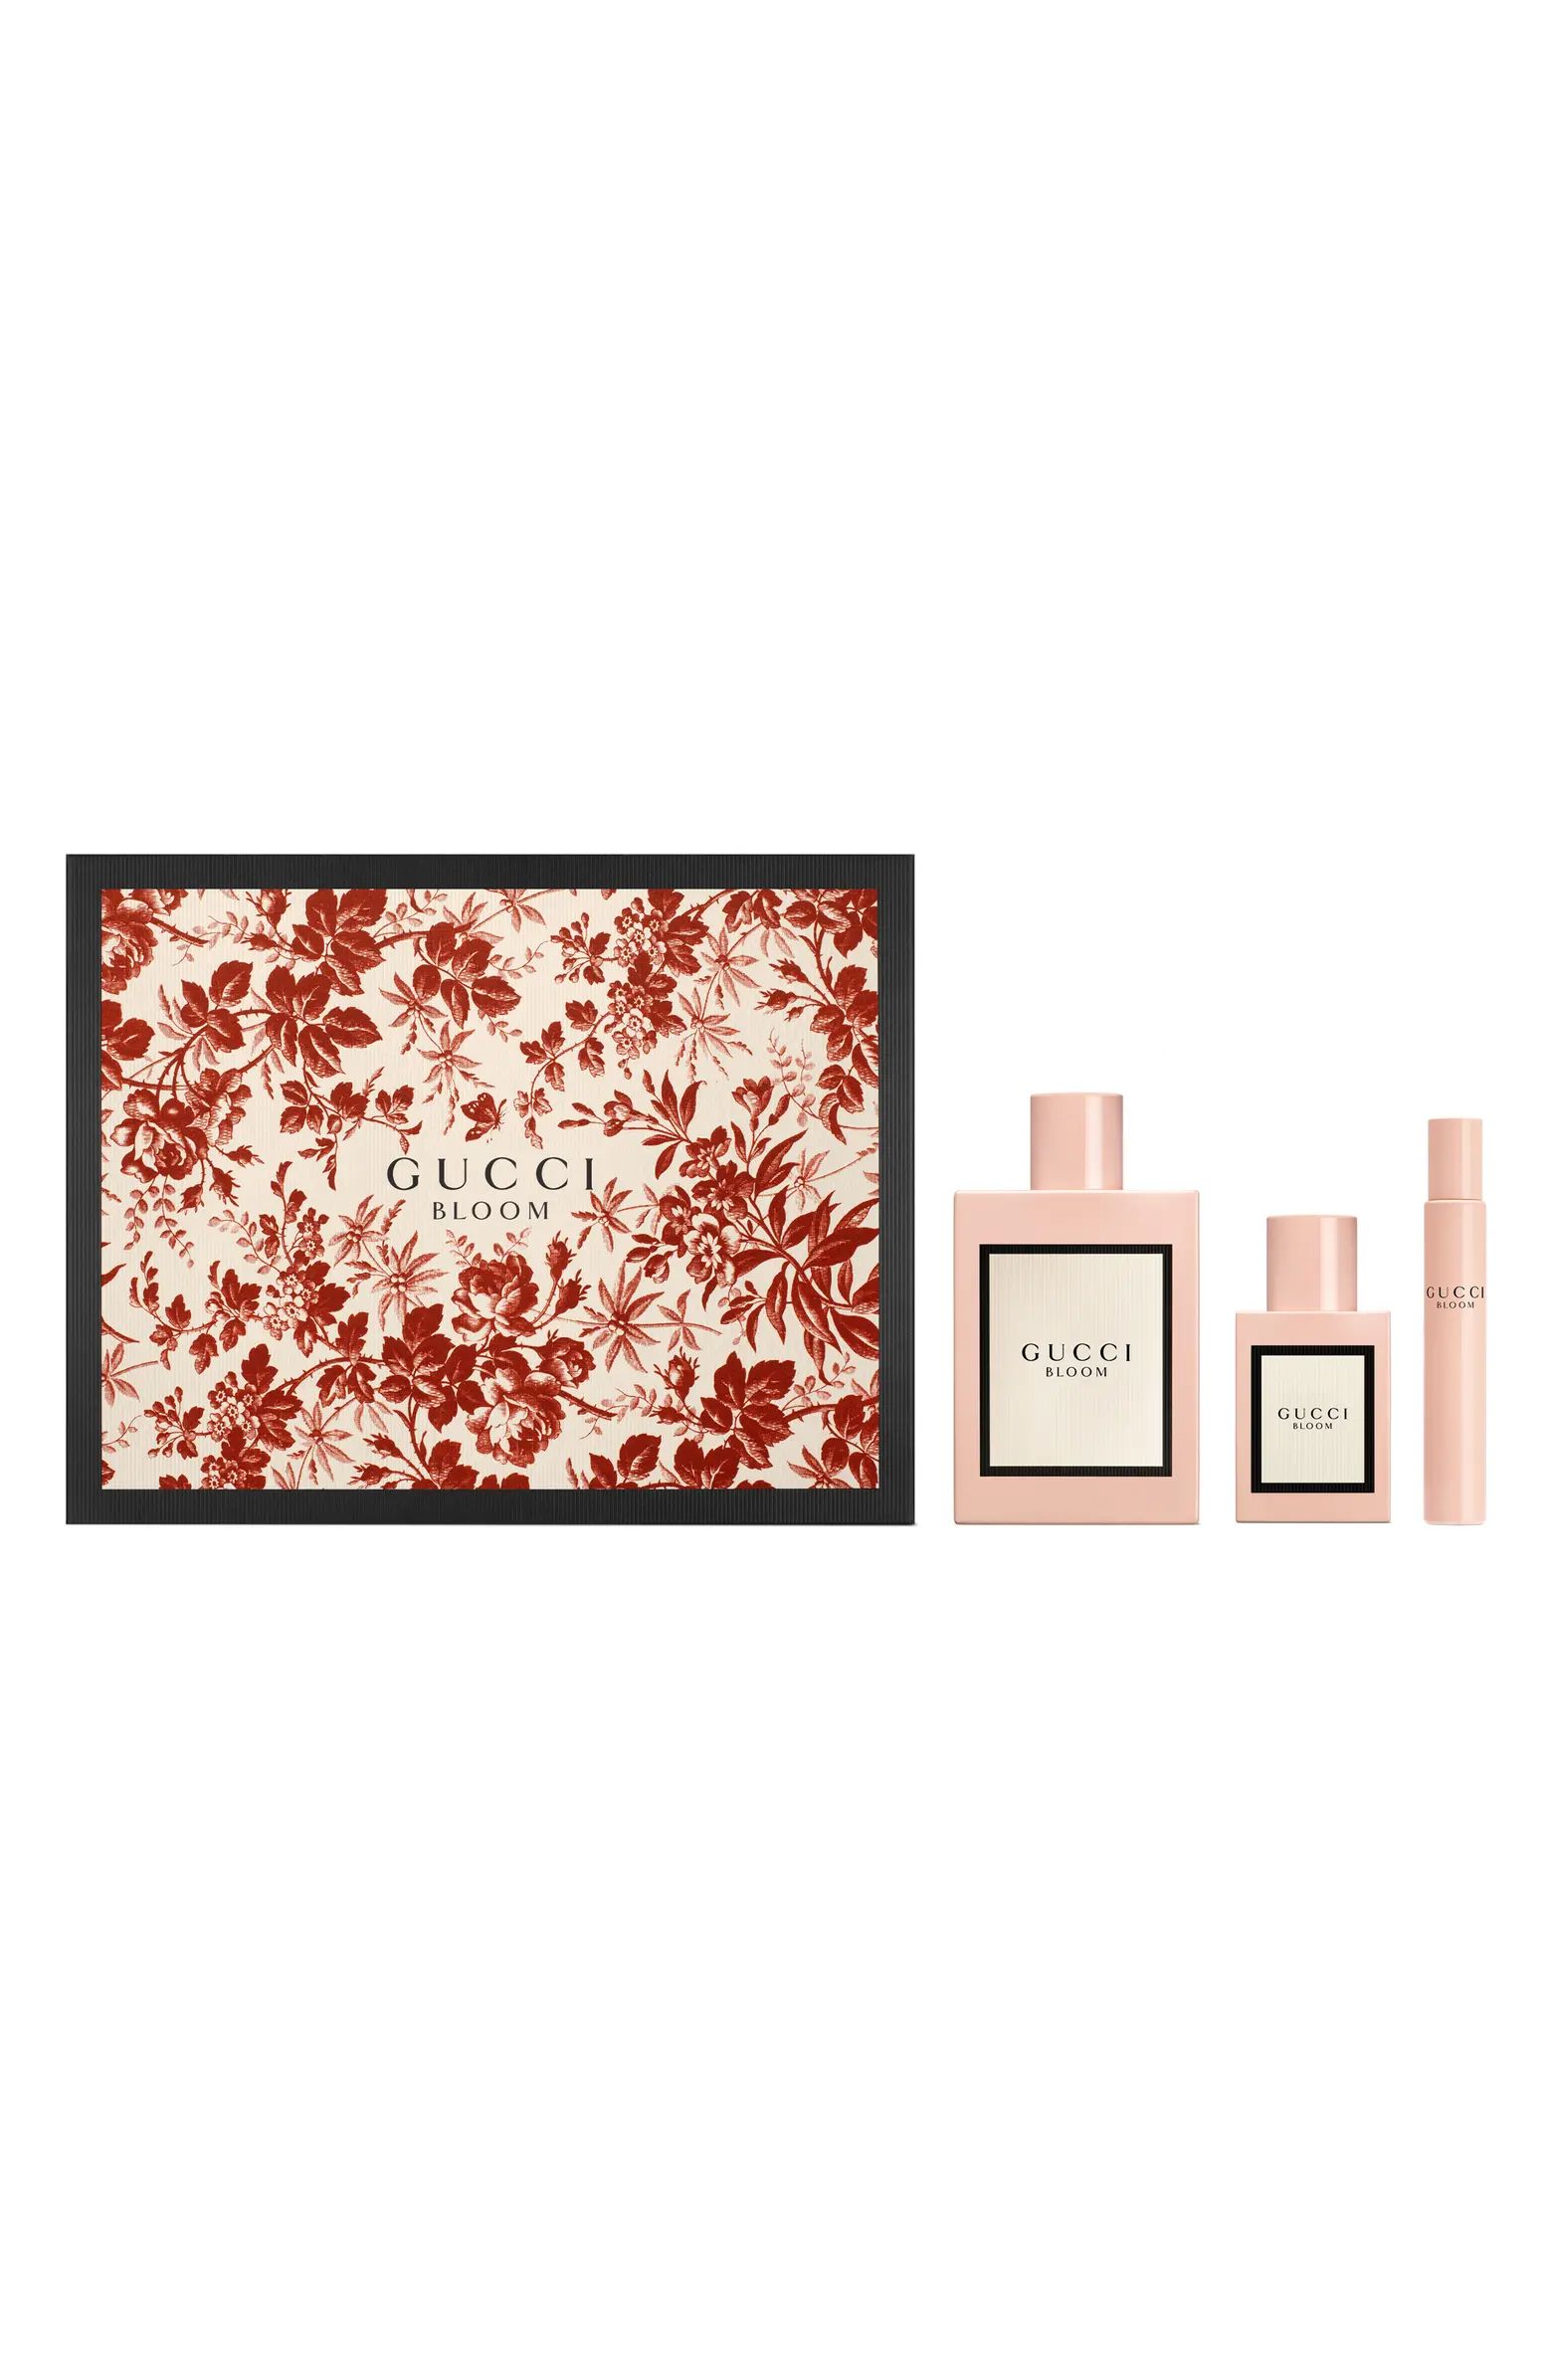 Bloom Eau de Parfum Set $239 Value | Nordstrom